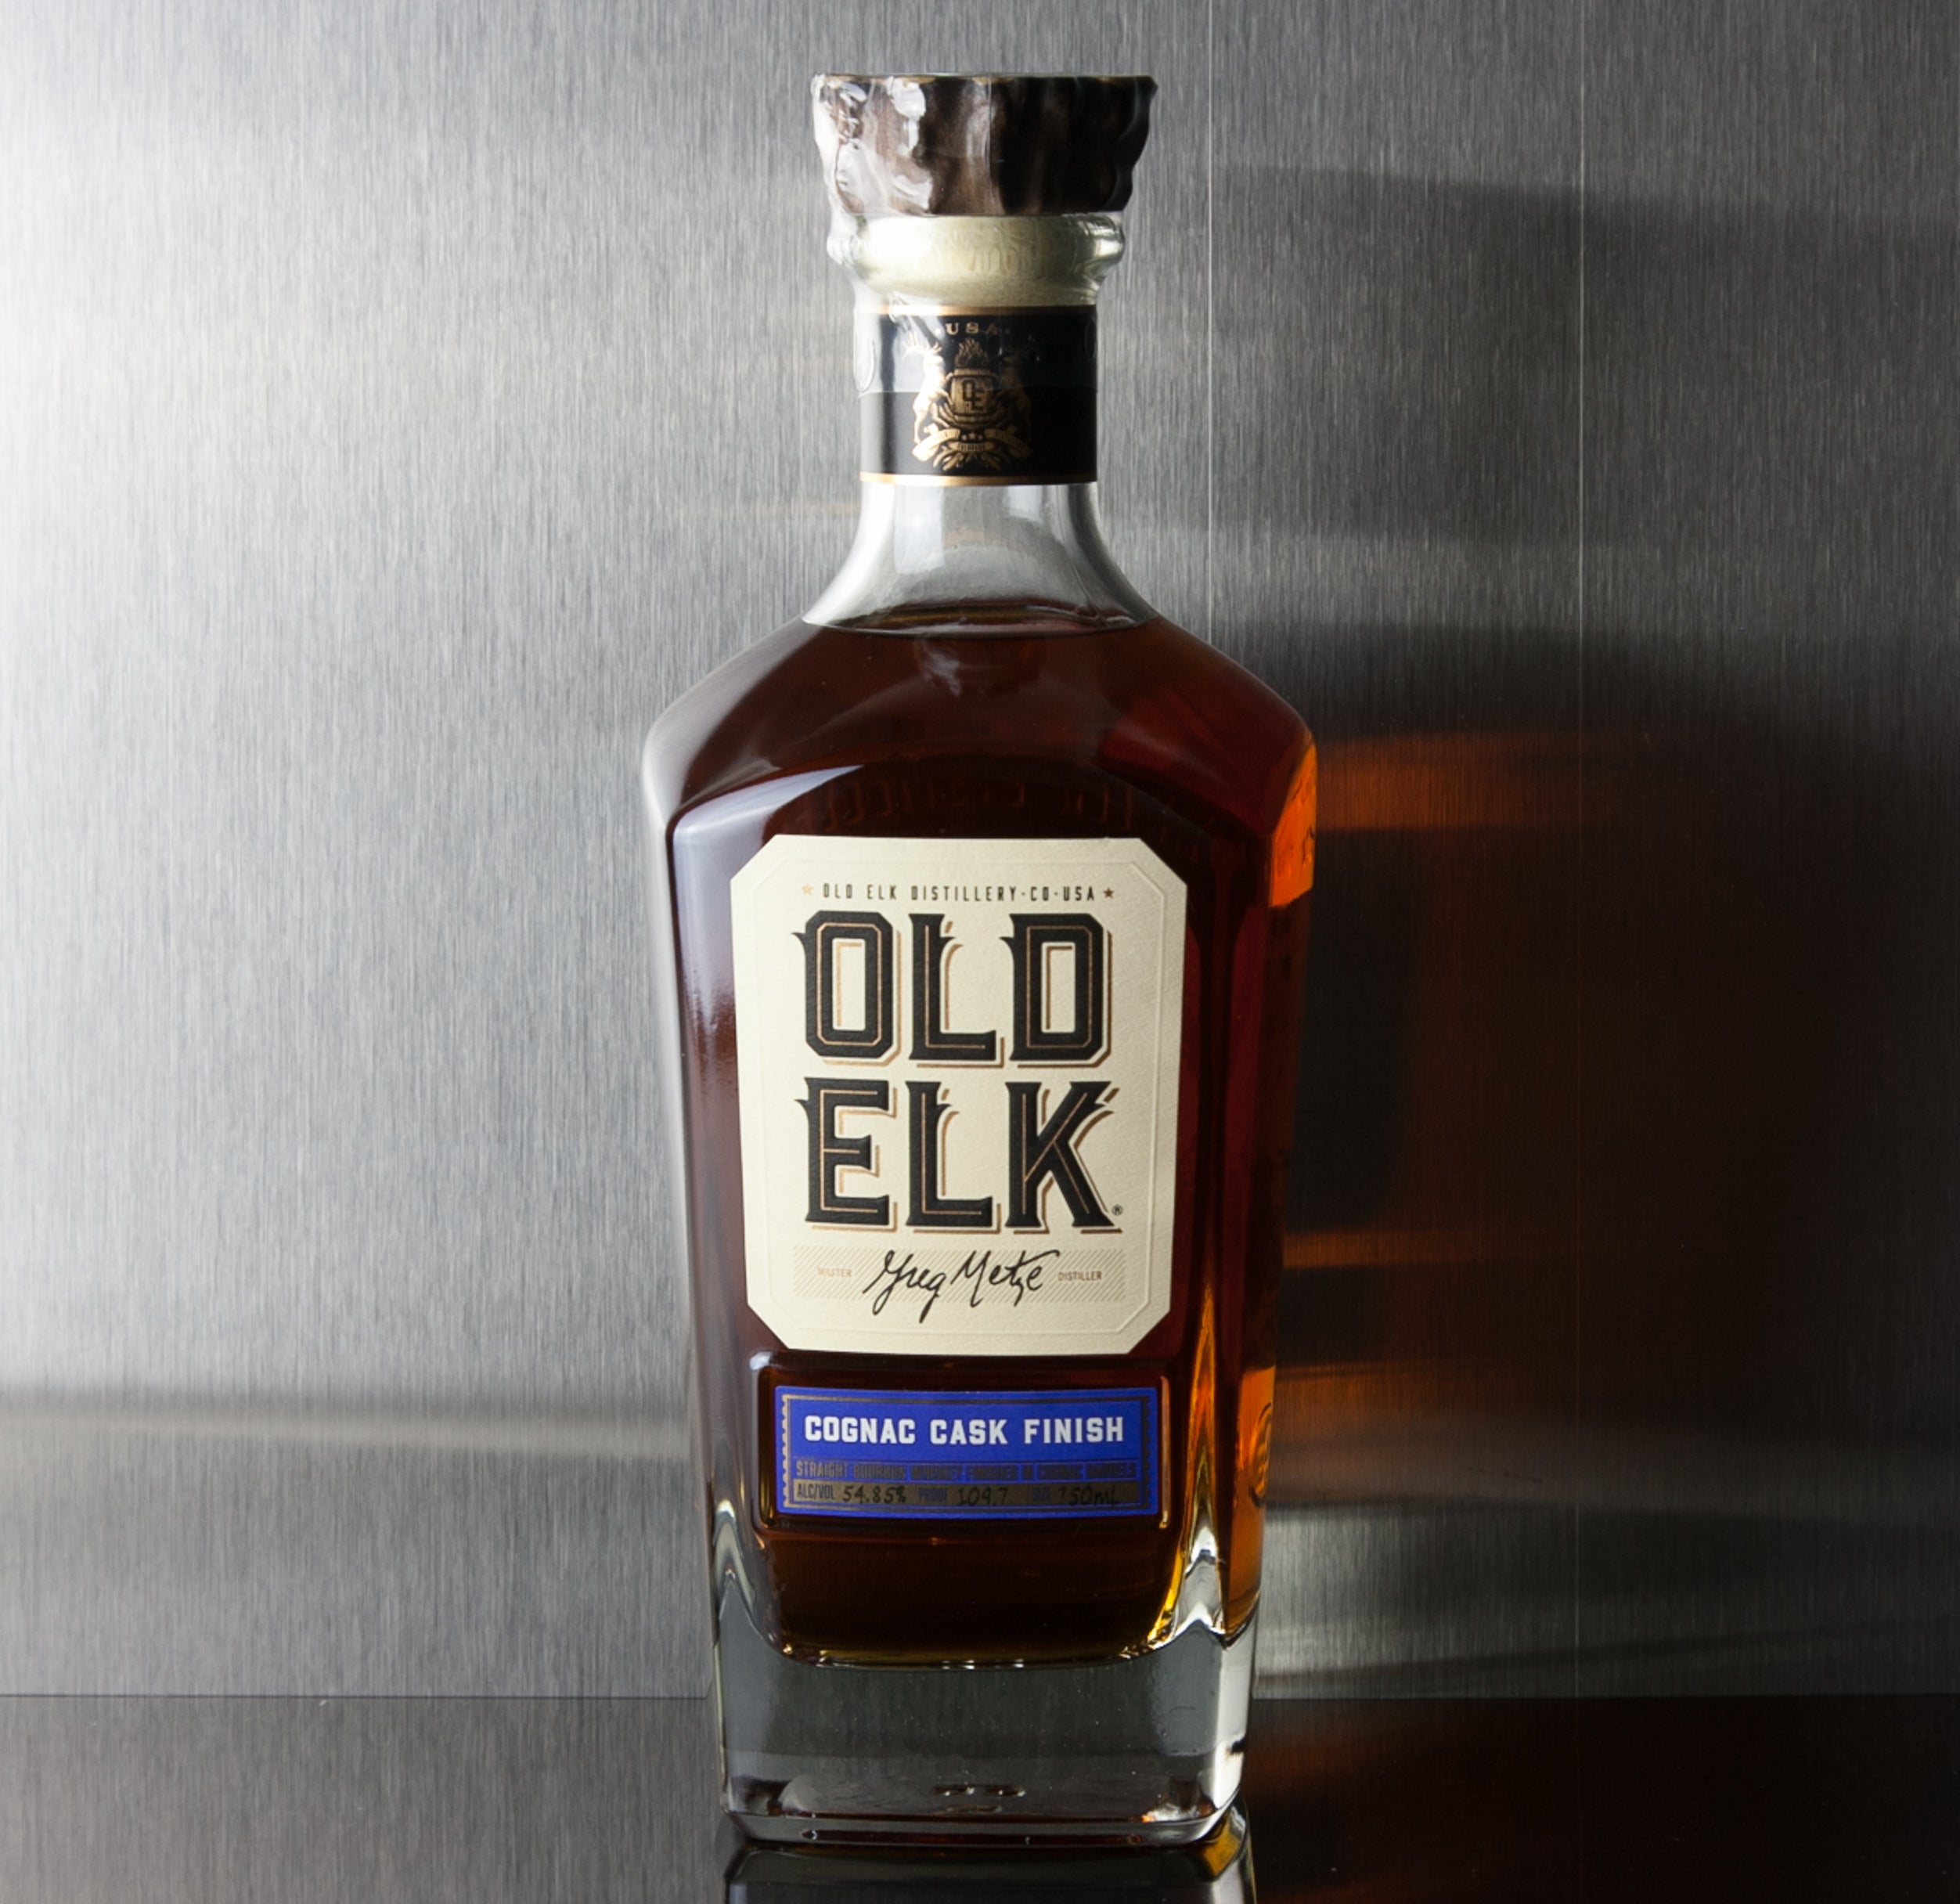 Olk Elk Cognac Cask Finish Bourbon